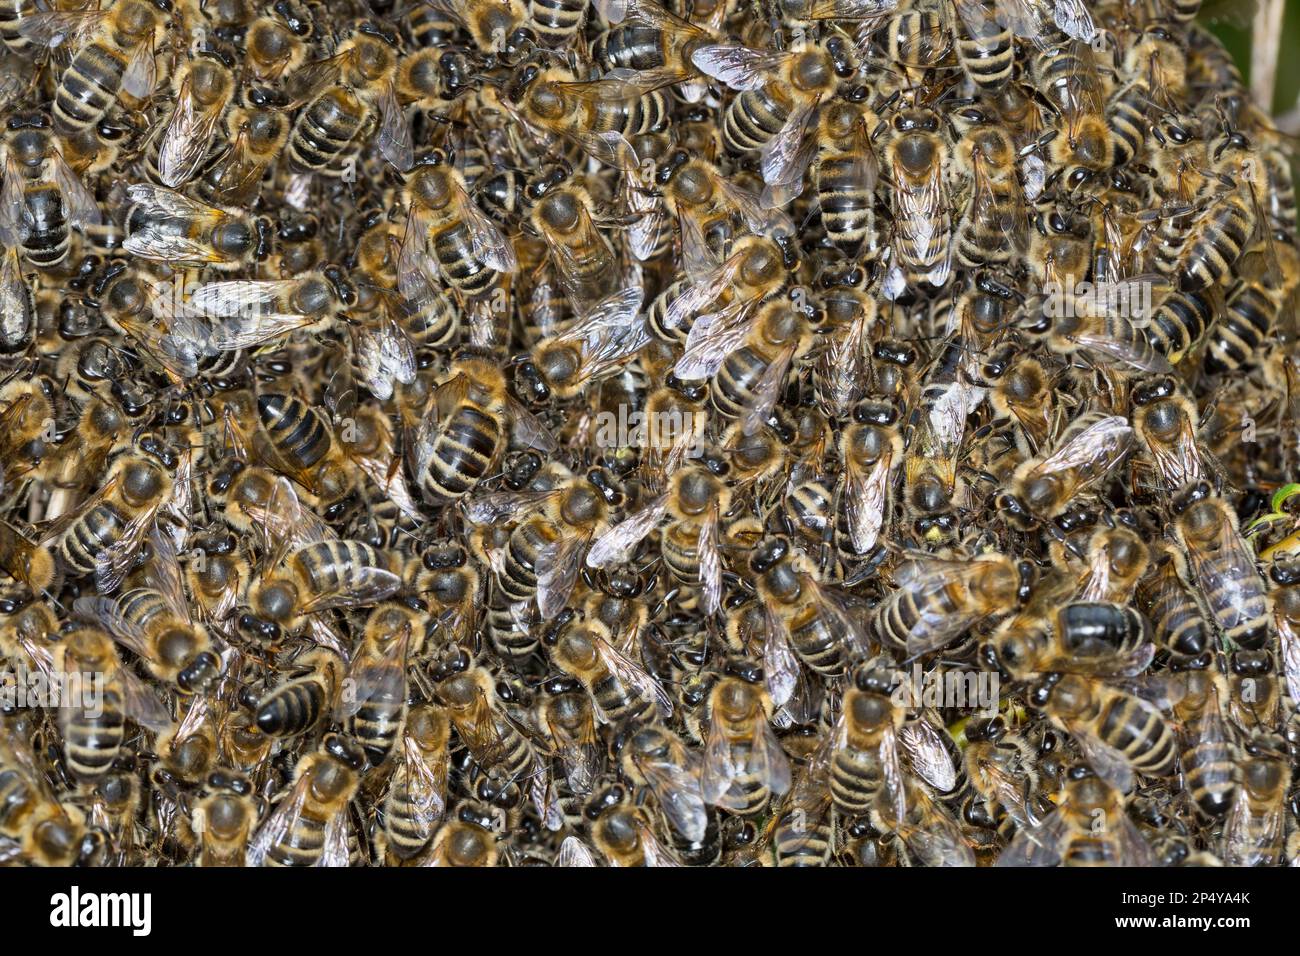 Honigbiene, Bienenschwarm, Schwarm, Volk schwärmt aus, Bienenvolk, Honig-Biene, Europäische Honigbiene, Westliche Honigbiene, Biene, Bienen, Apis mell Stock Photo